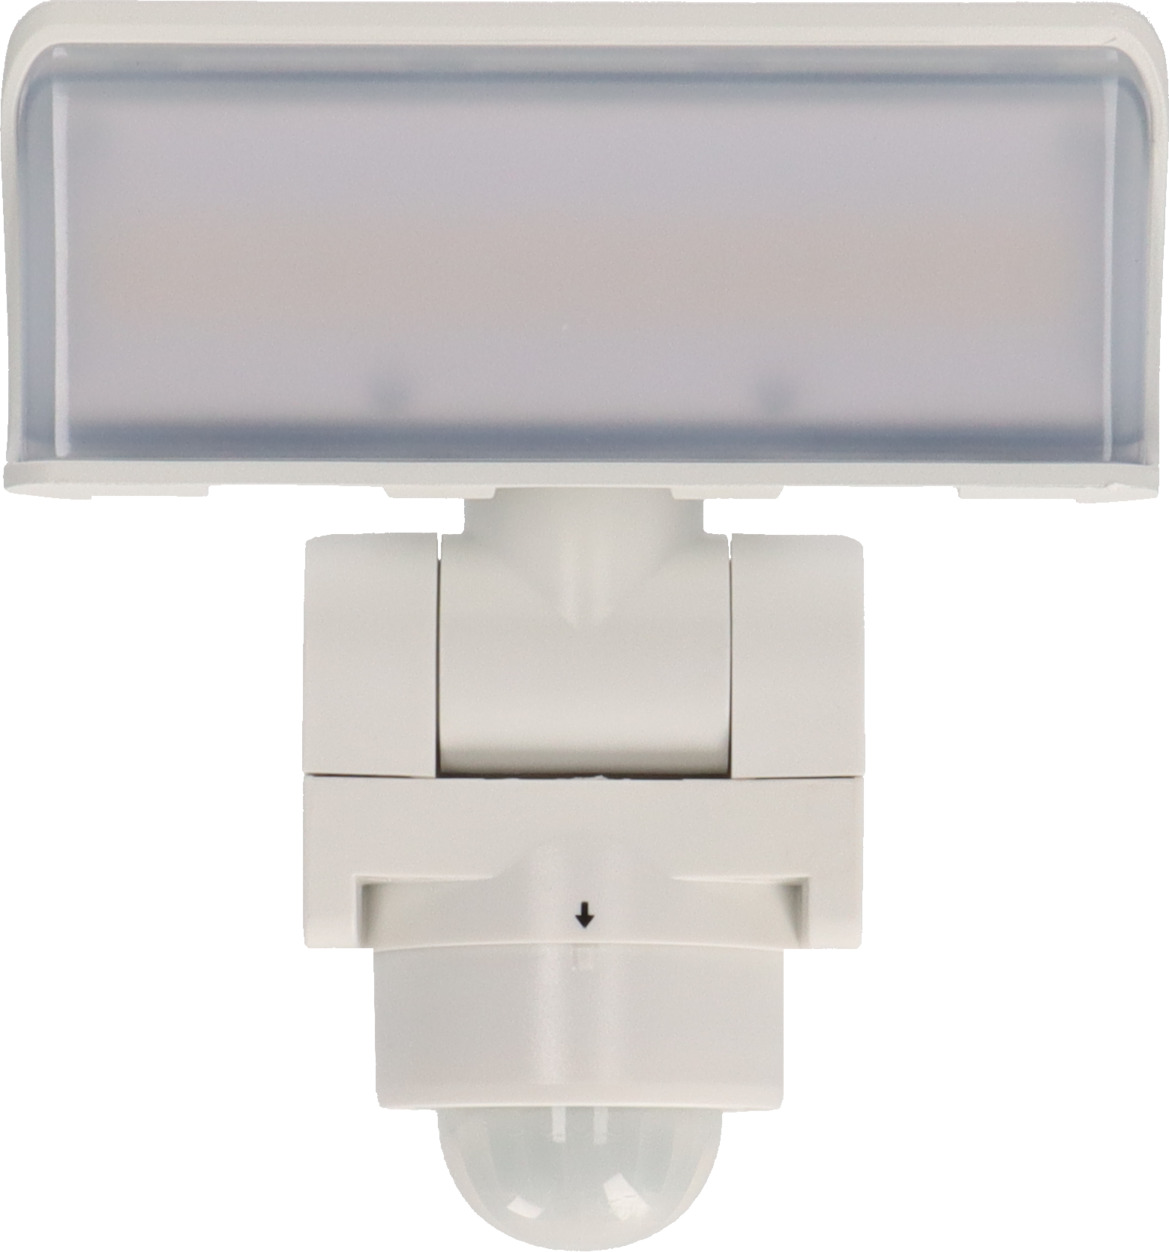 LED Strahler WS 2050 WP mit Bewegungsmelder, 1680lm, IP44, weiß |  brennenstuhl®